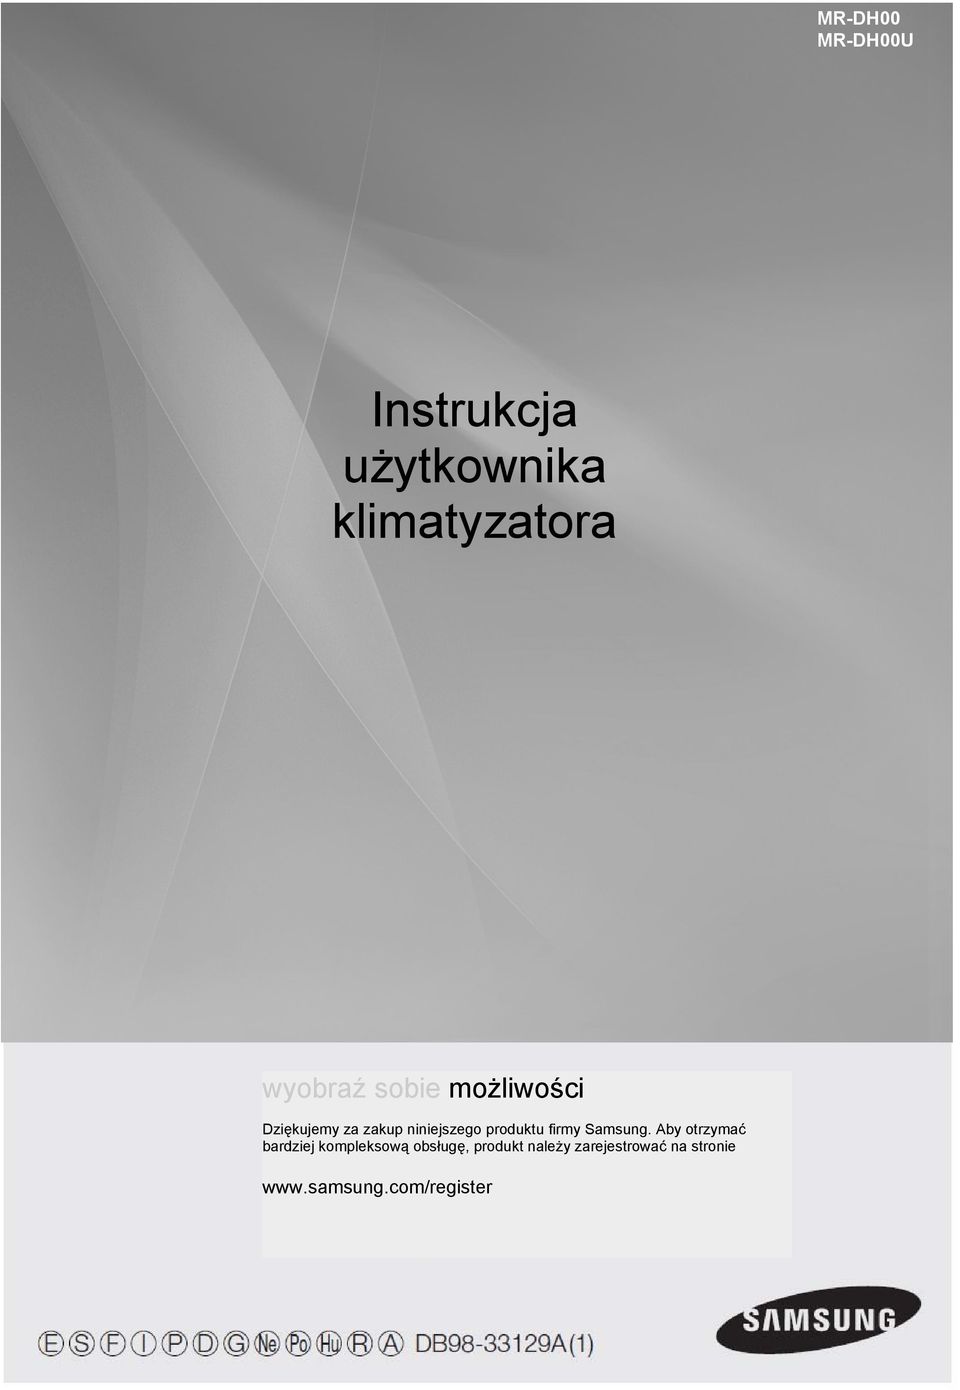 Instrukcja użytkownika klimatyzatora - PDF Free Download